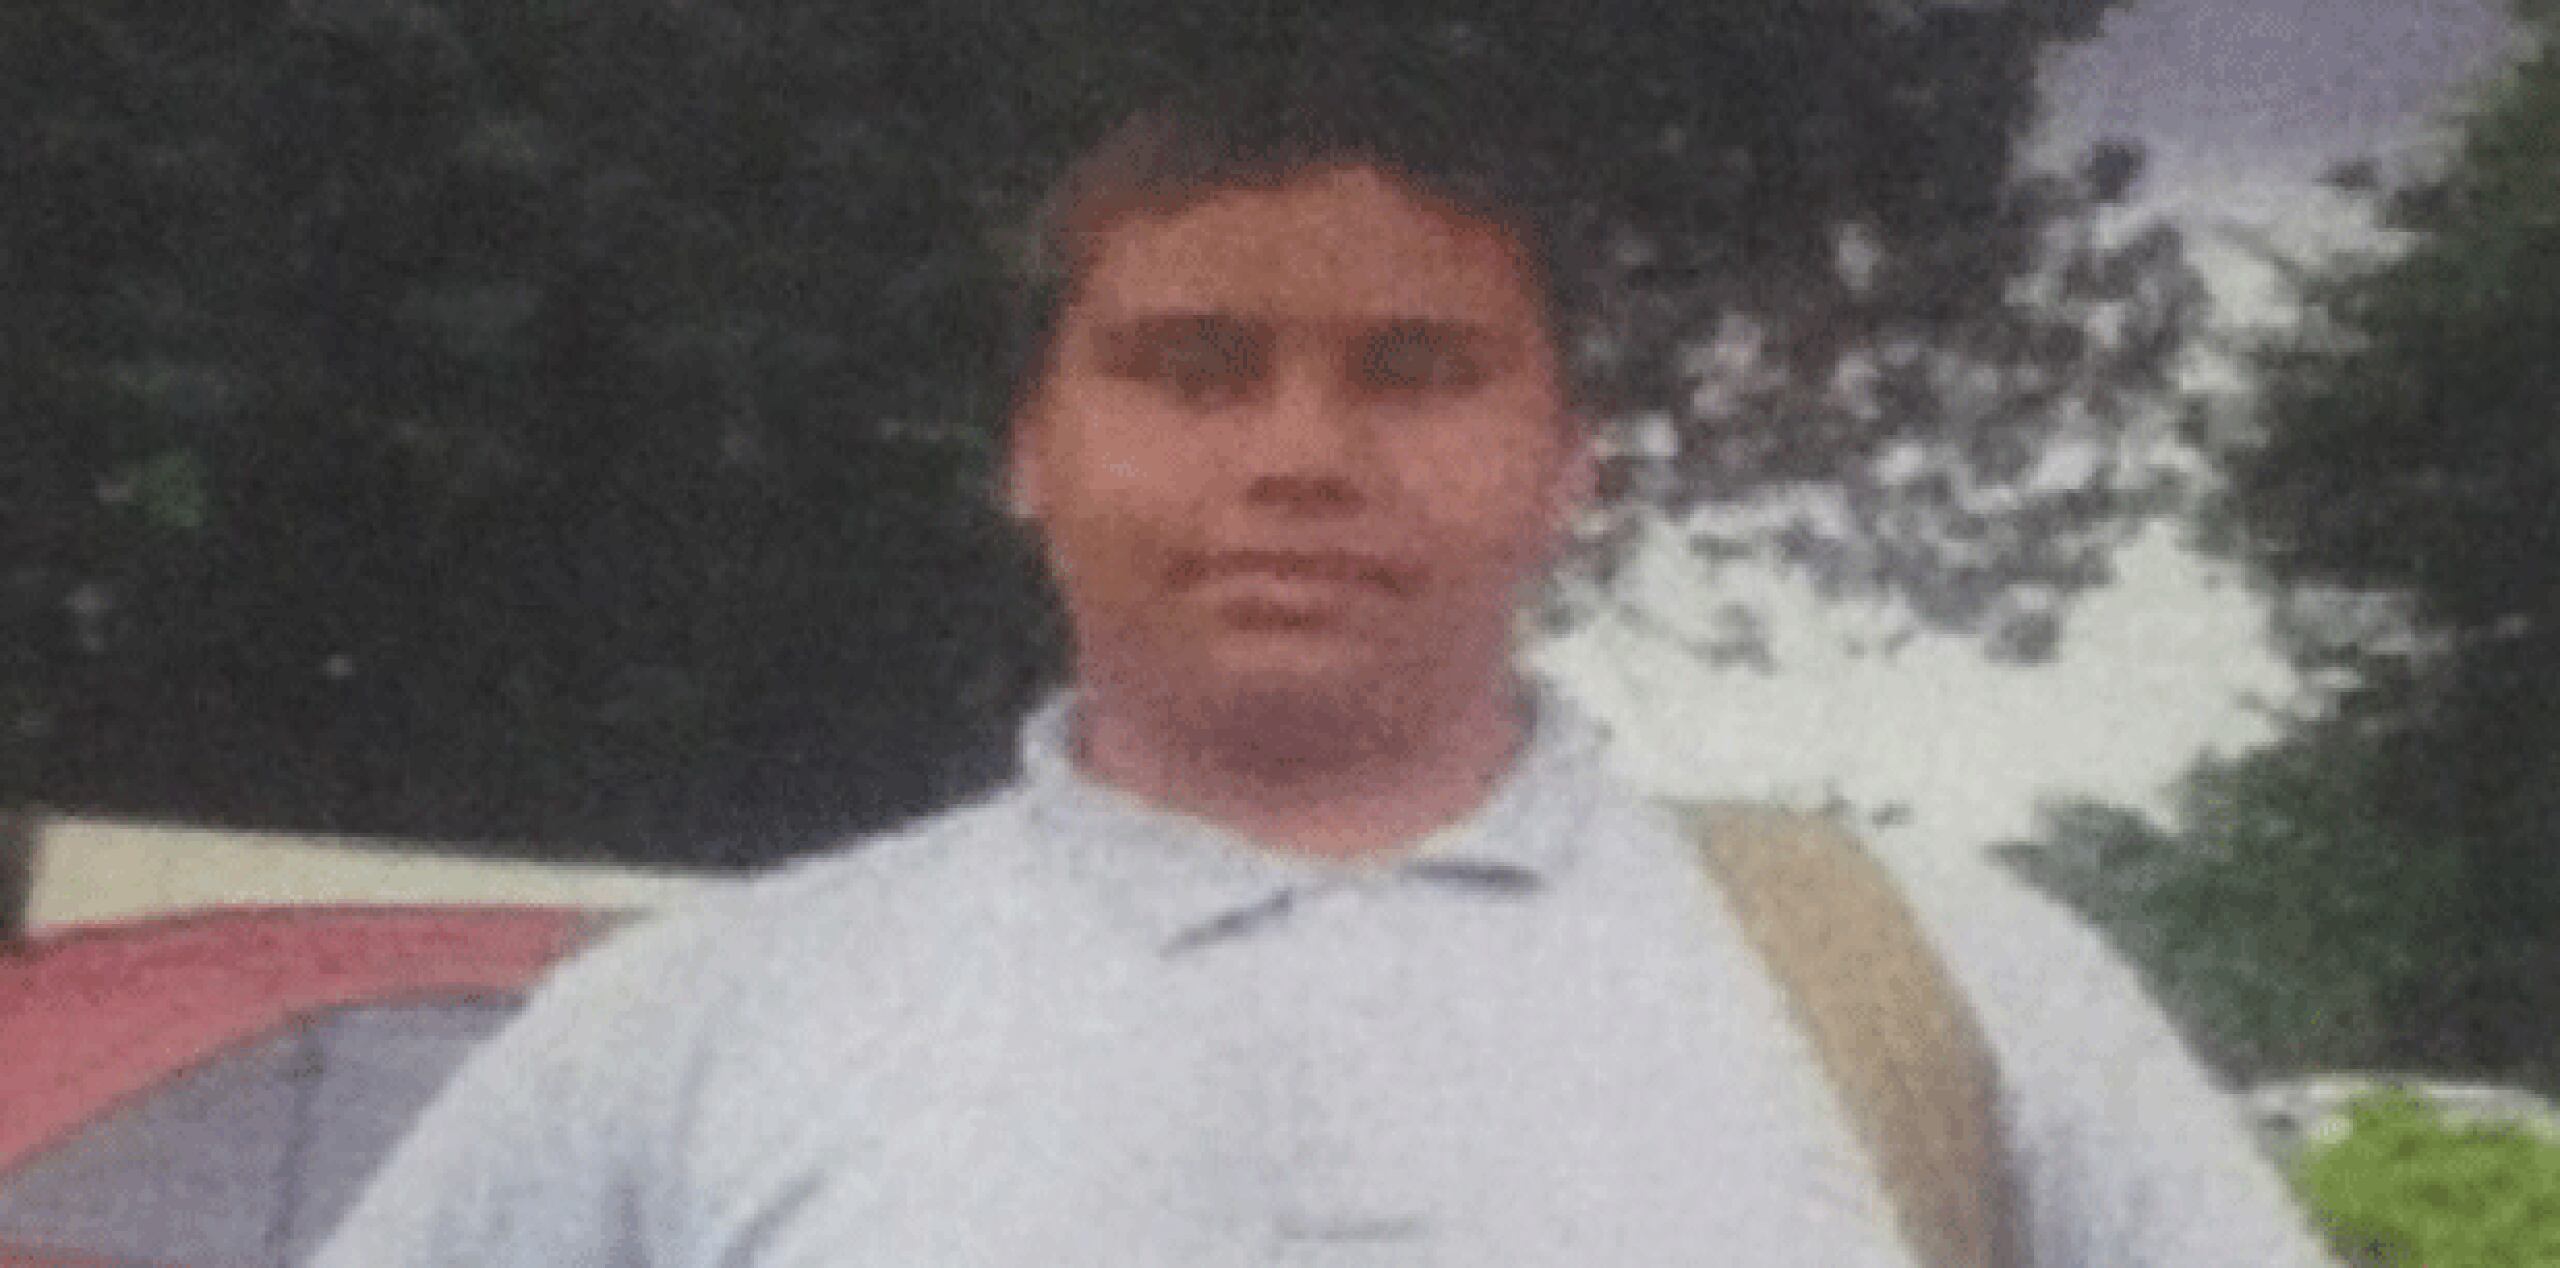 El Cuerpo de Investigaciones Criminales en Aguadilla divulgó esta noche una fotografía del adolescente desaparecido, identificado como Sergio García Guadalupe, natural de Río Piedras. (Suministrada)